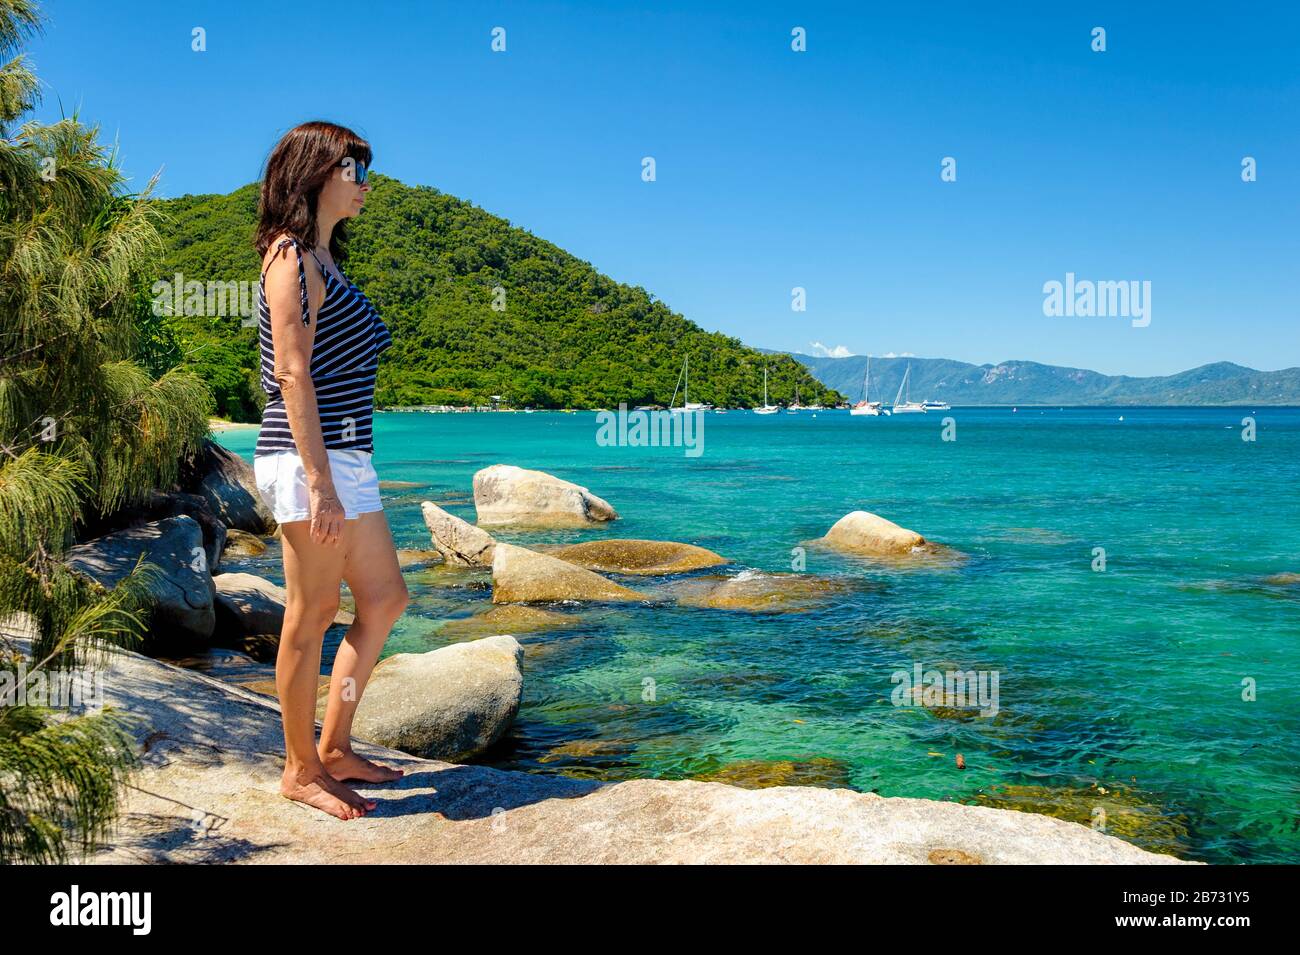 Weiblicher Tourist an einer felsigen Küste auf Fitzroy Island, in Australien, mit Blick auf das schöne türkisfarbene Wasser des Pazifischen Ozeans. Stockfoto